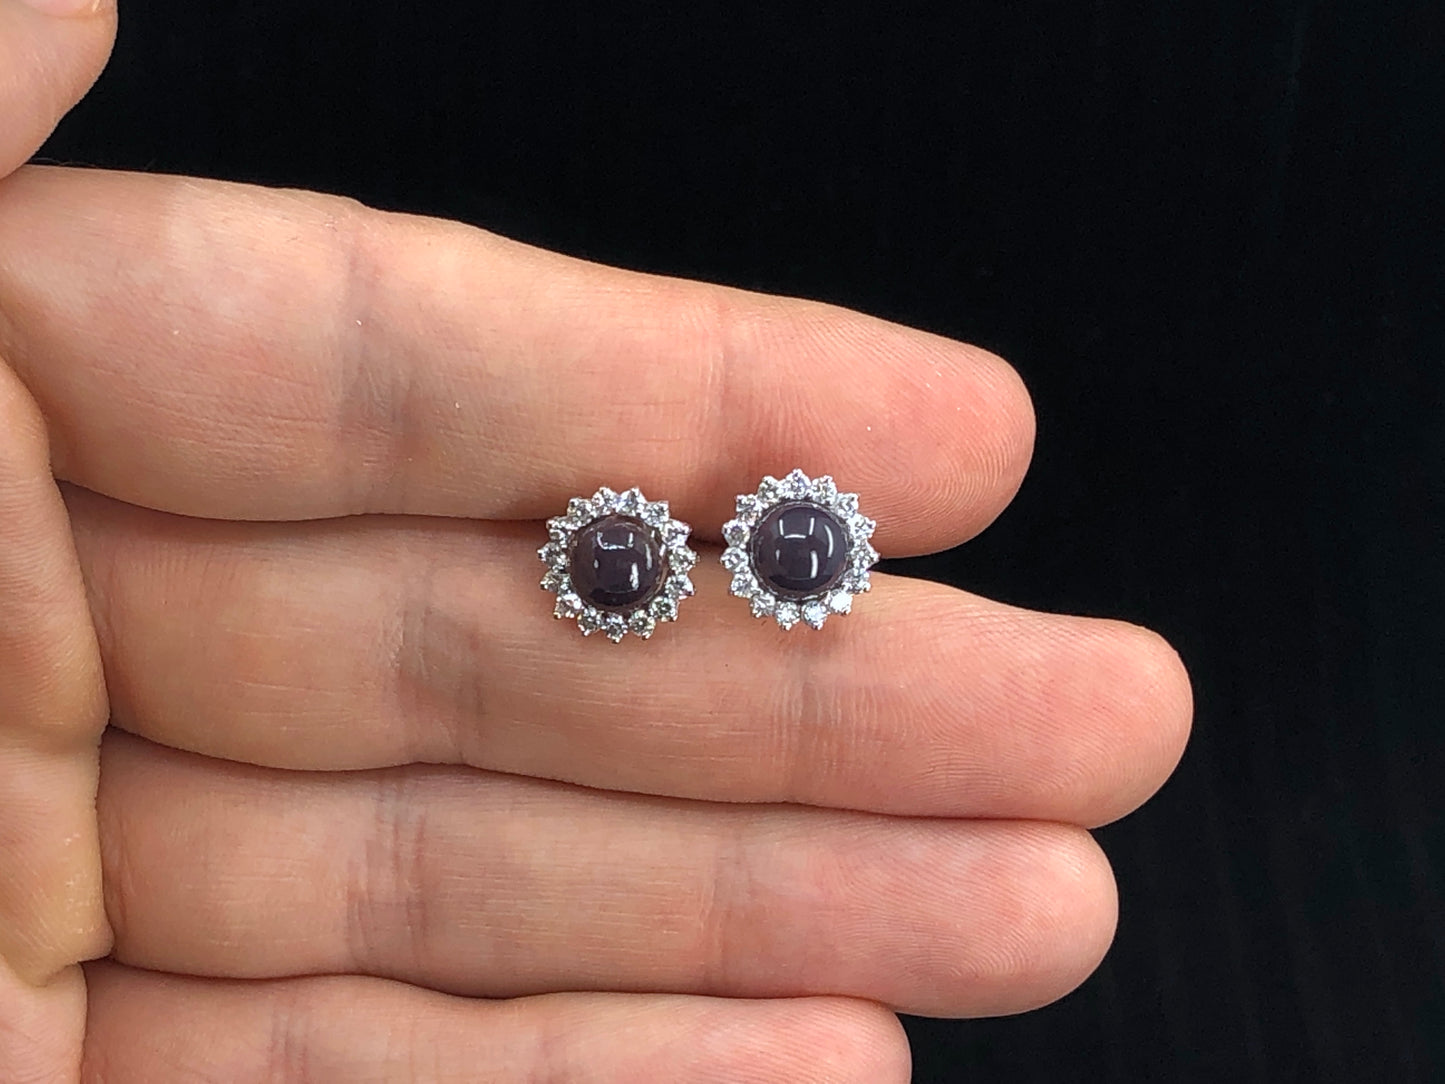 GIA 2.99 ctw. Natural Quahog Pearl & Diamond Earrings in Platinum